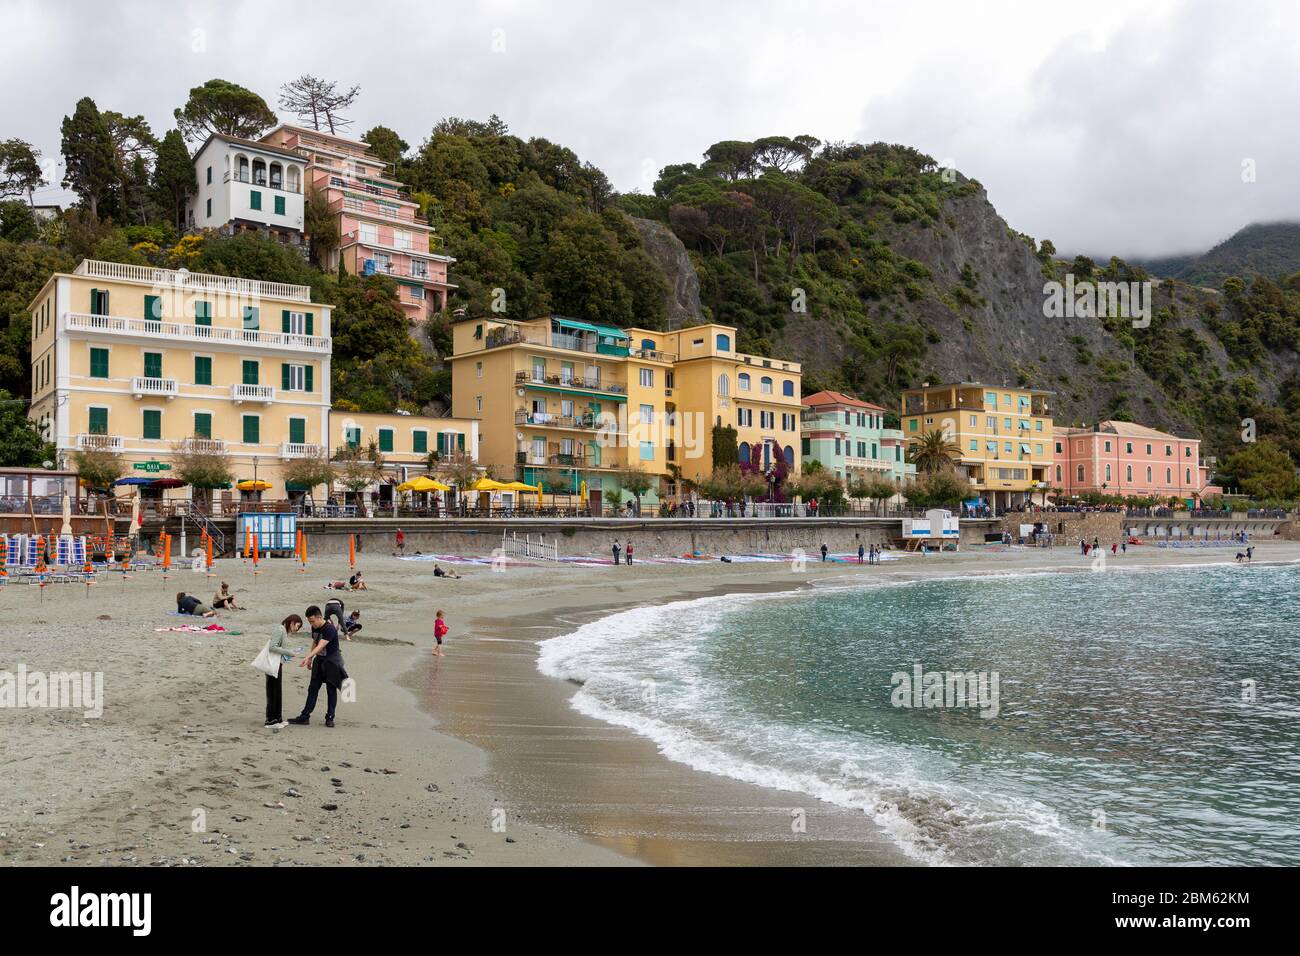 Monterosso al Mare ist der einzige Ort der Cinque Terre, der über einen Badestrand verfügt. Cinque Terre, la Spezia, Liguien, Italien Foto de stock